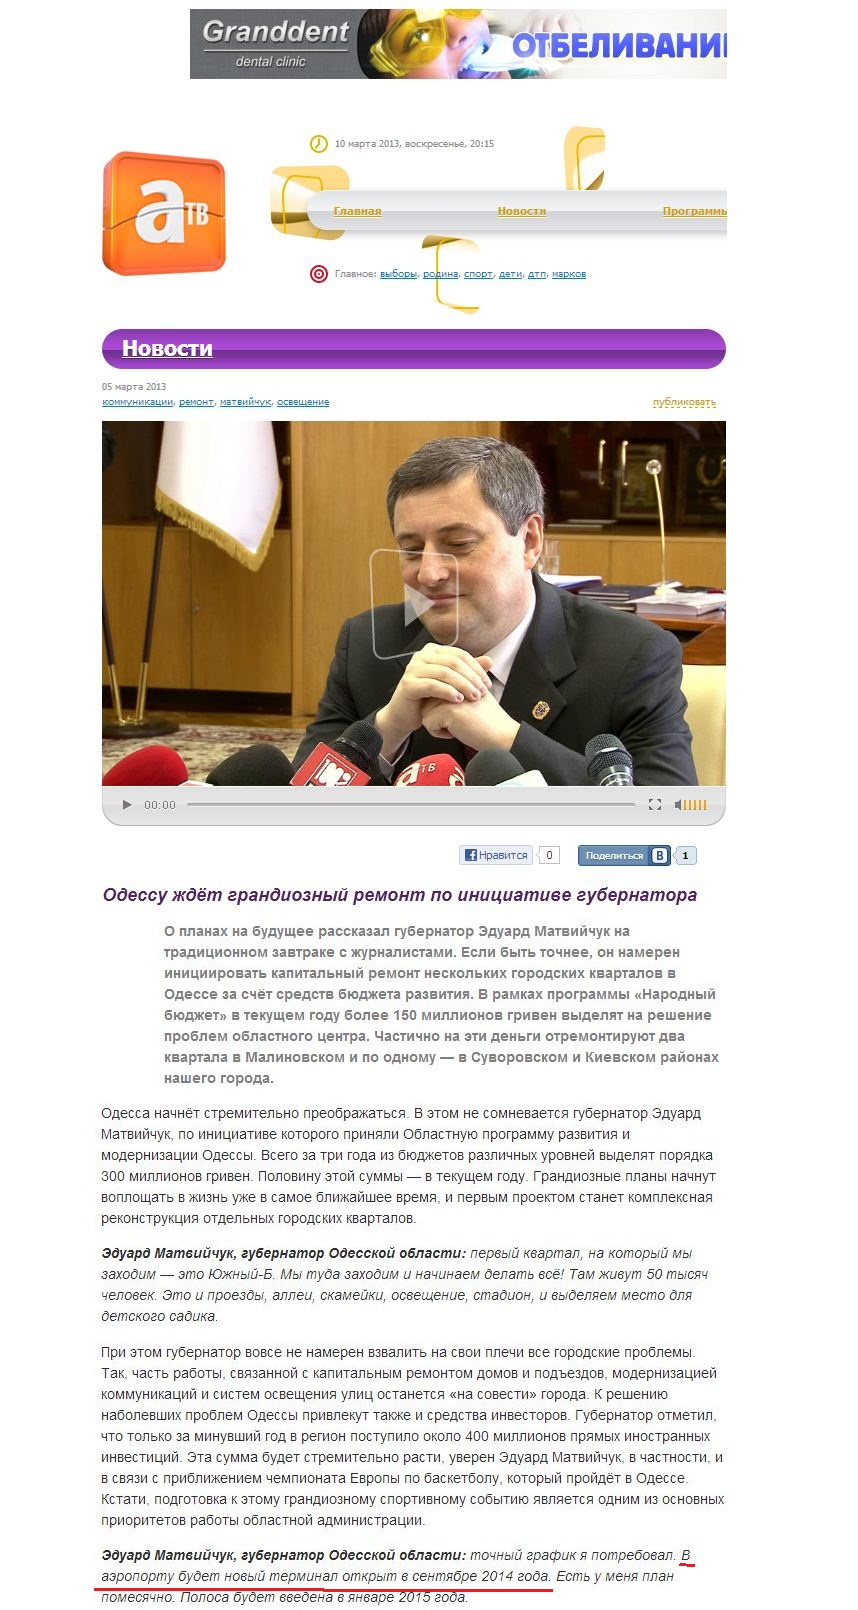 http://atv.odessa.ua/news/2013/03/05/odessu_jdet_grandiozniy_remont_7953.html